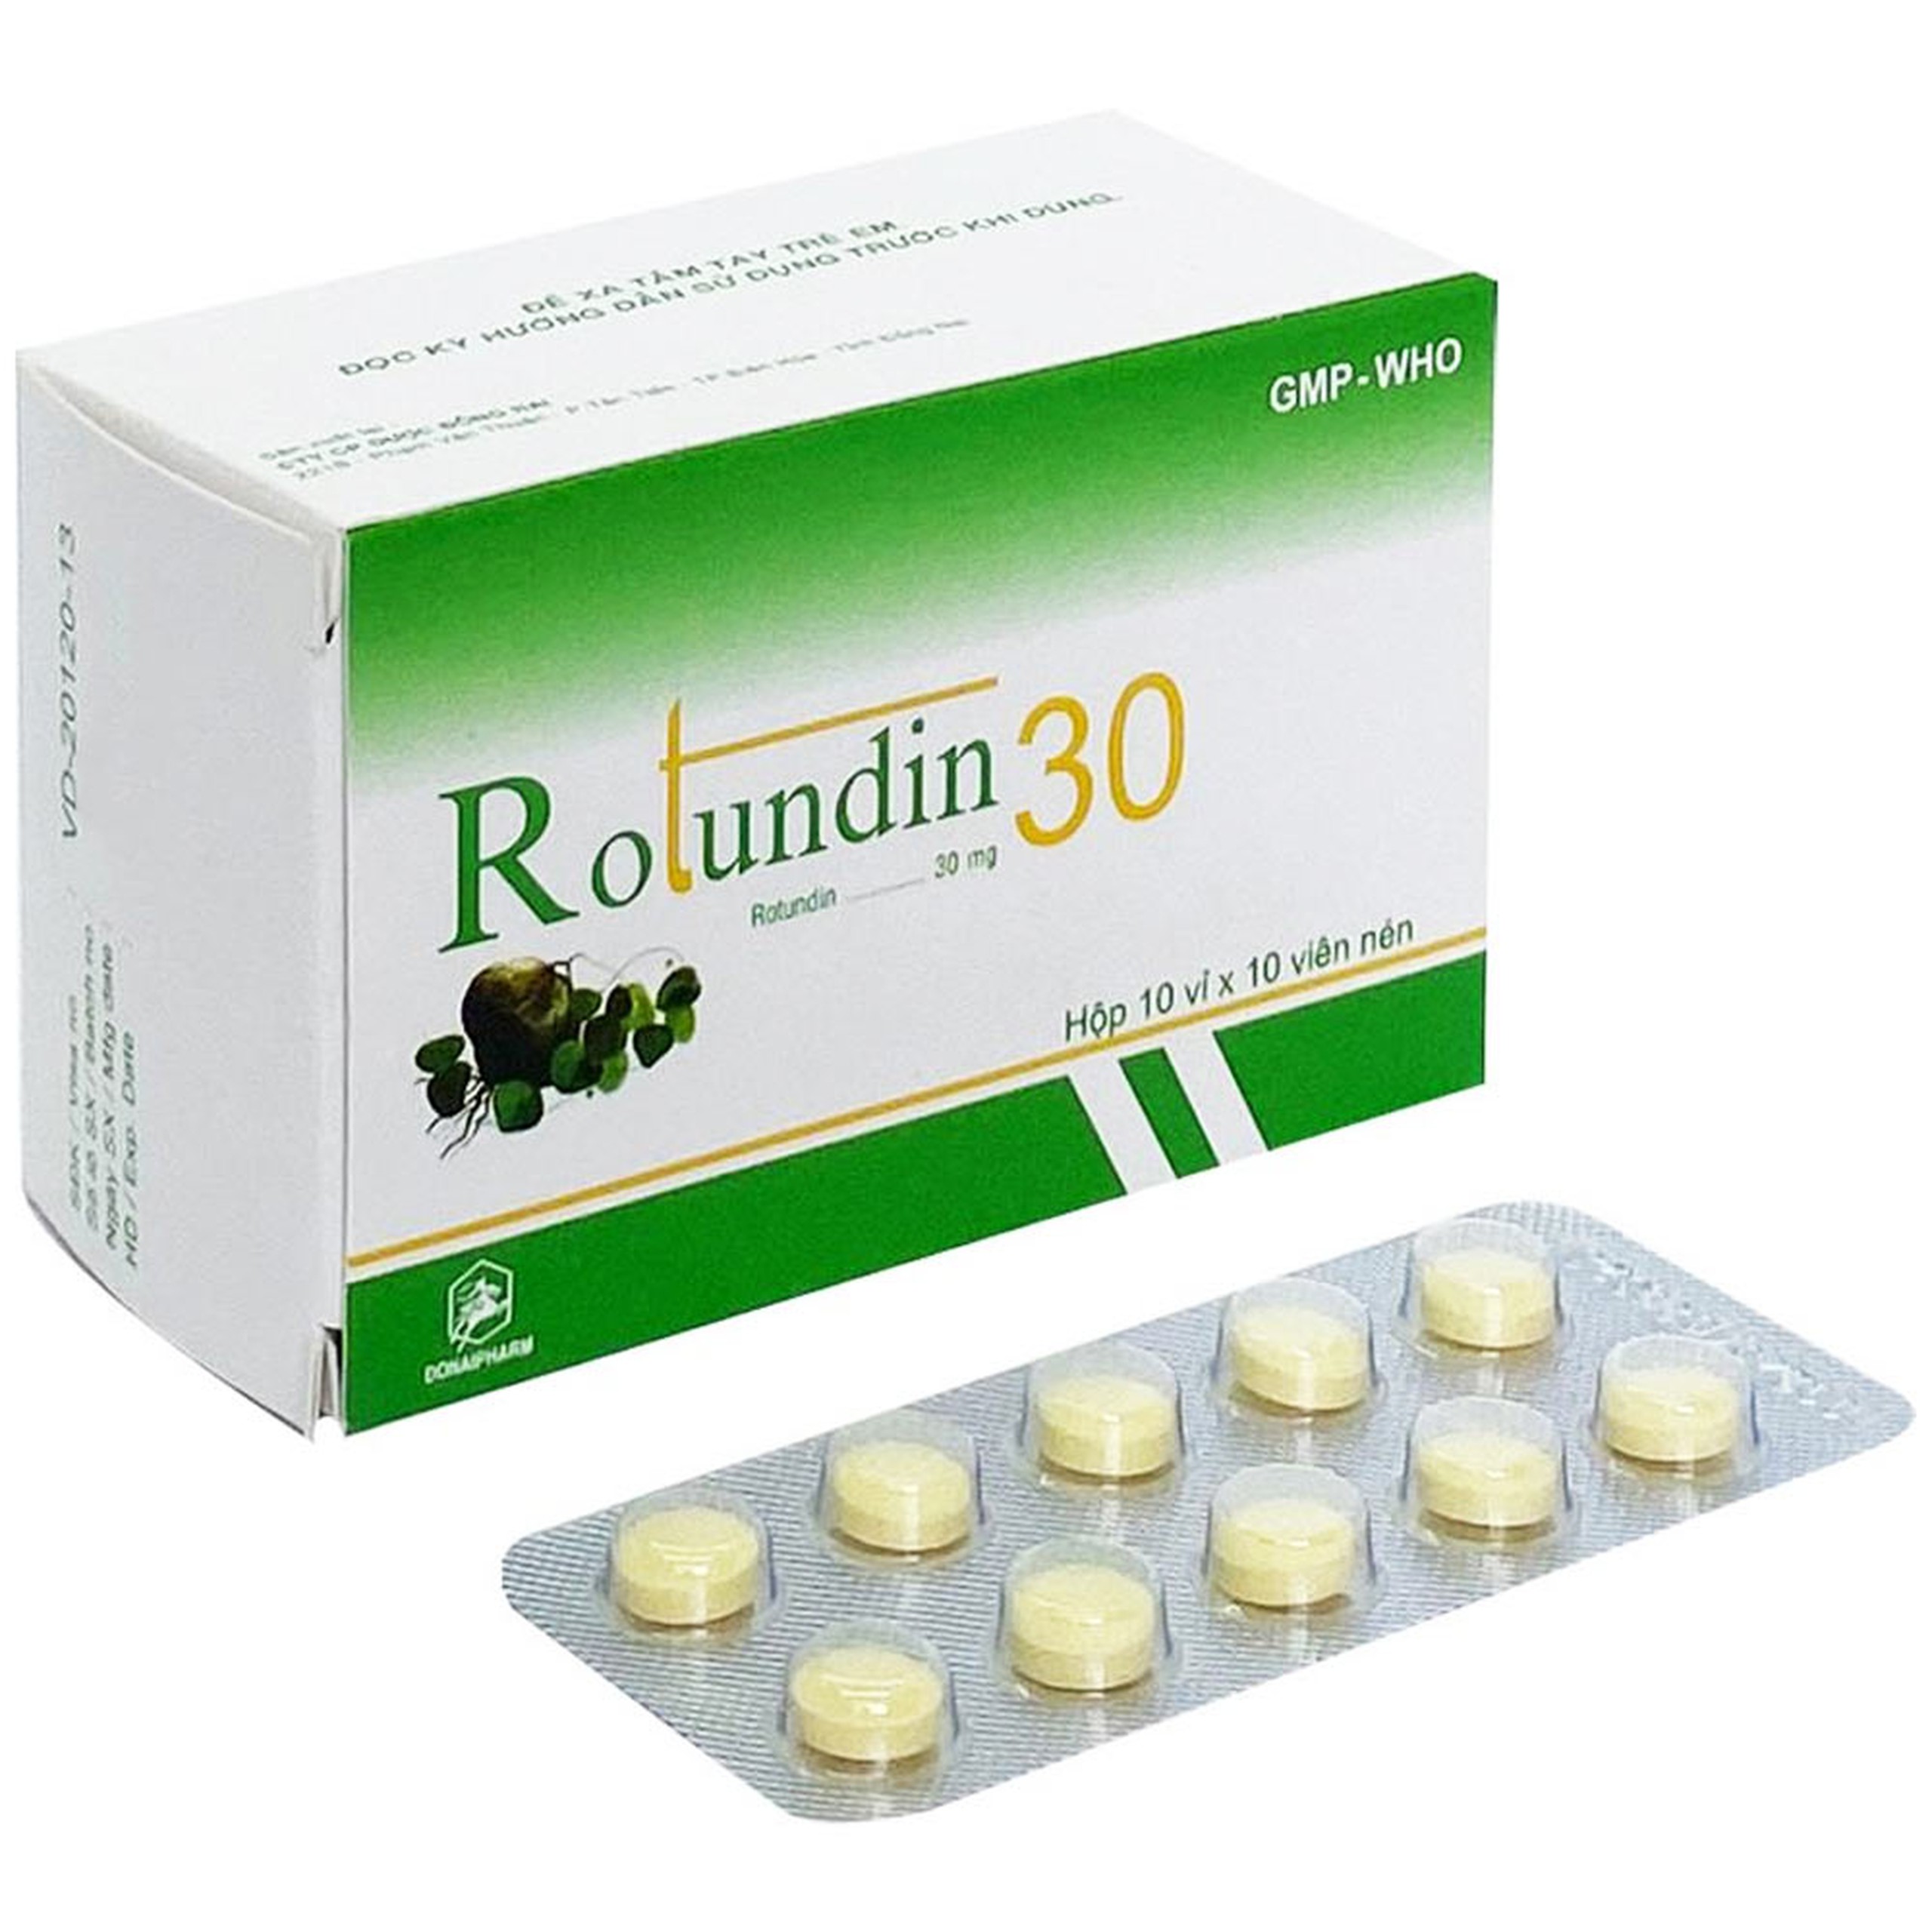 Thuốc Rotundin 30 Donaipharm điều trị căng thẳng, lo âu do mất ngủ, giấc ngủ đến chậm (10 vỉ x 10 viên)